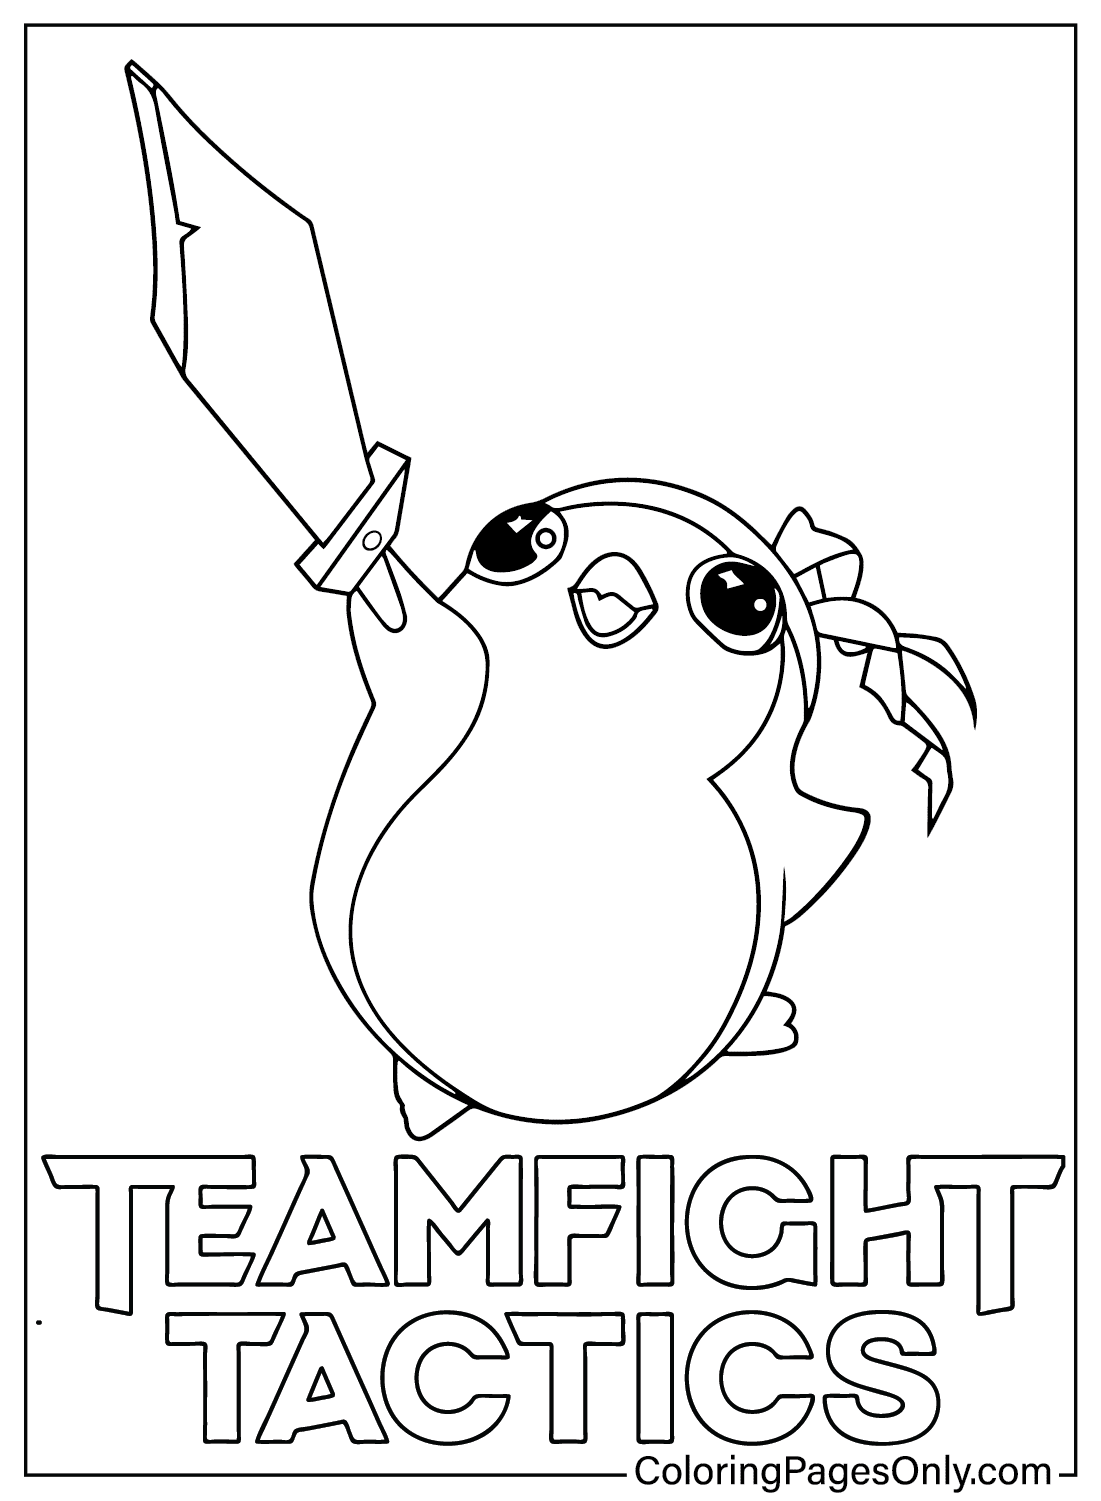 Цветная страница Teamfight Tactics из Teamfight Tactics